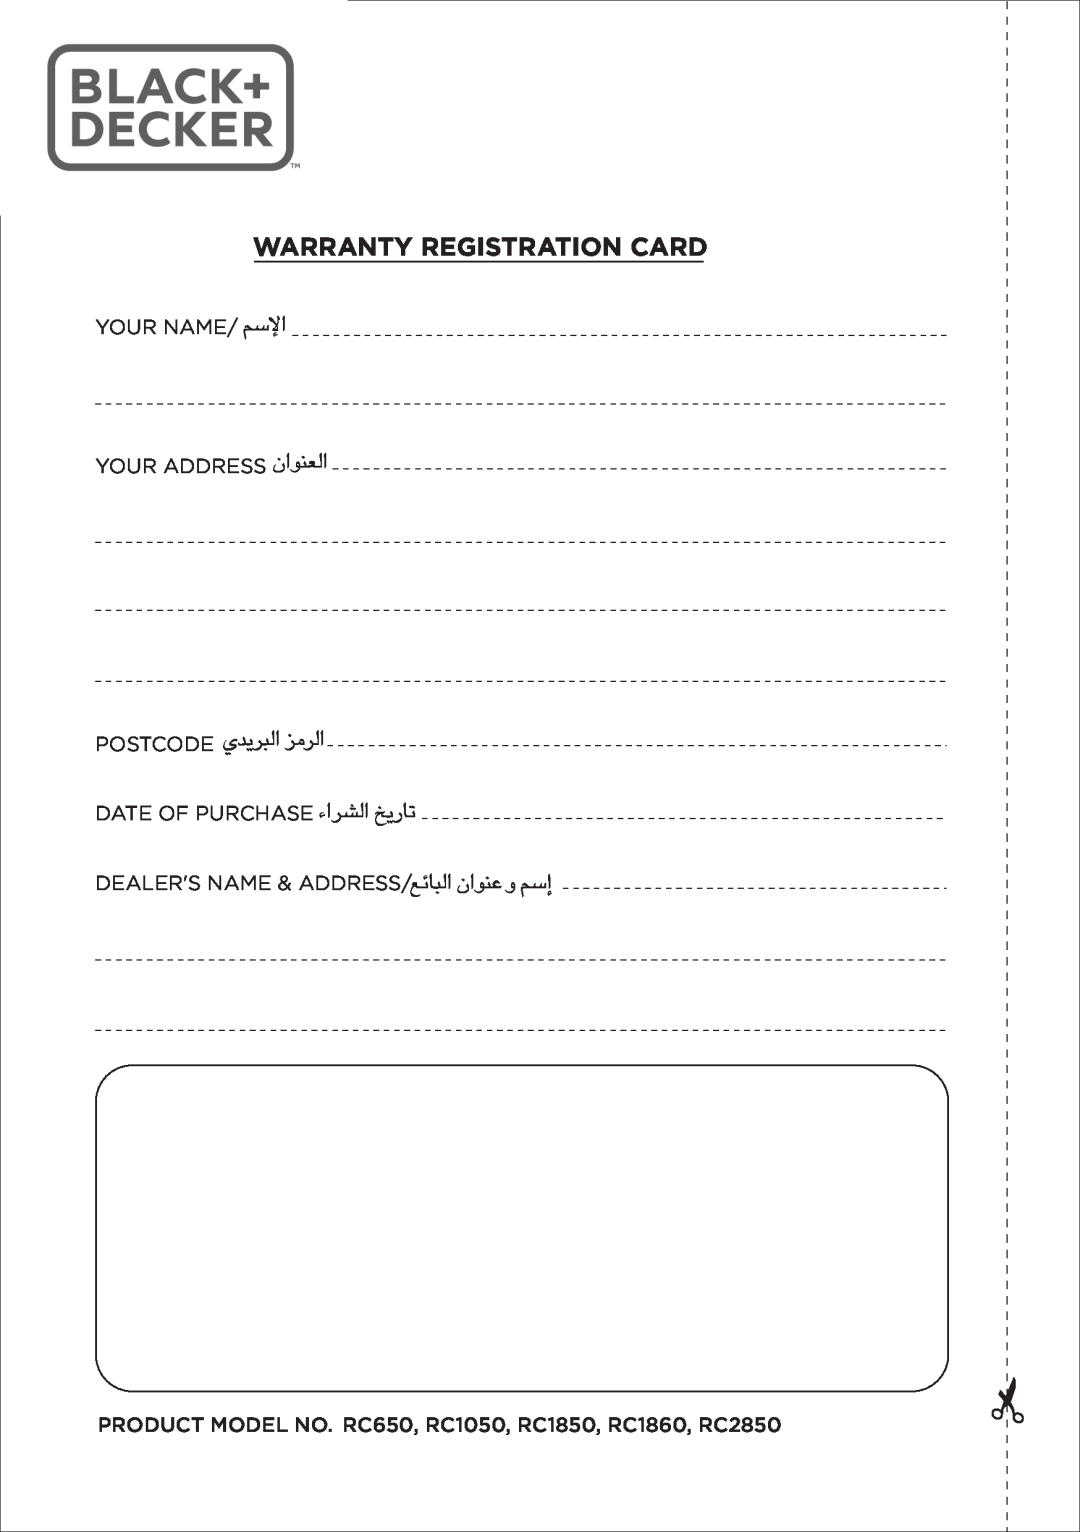 Black & Decker RC650 RC1050 RC1850 RC1860 RC2850 Warranty Registration Card, «∞FMu«Ê, «∞∂d¥bÍ «∞d±e, «∞Ad«¡ ¢U¸¥a, «ùßr 